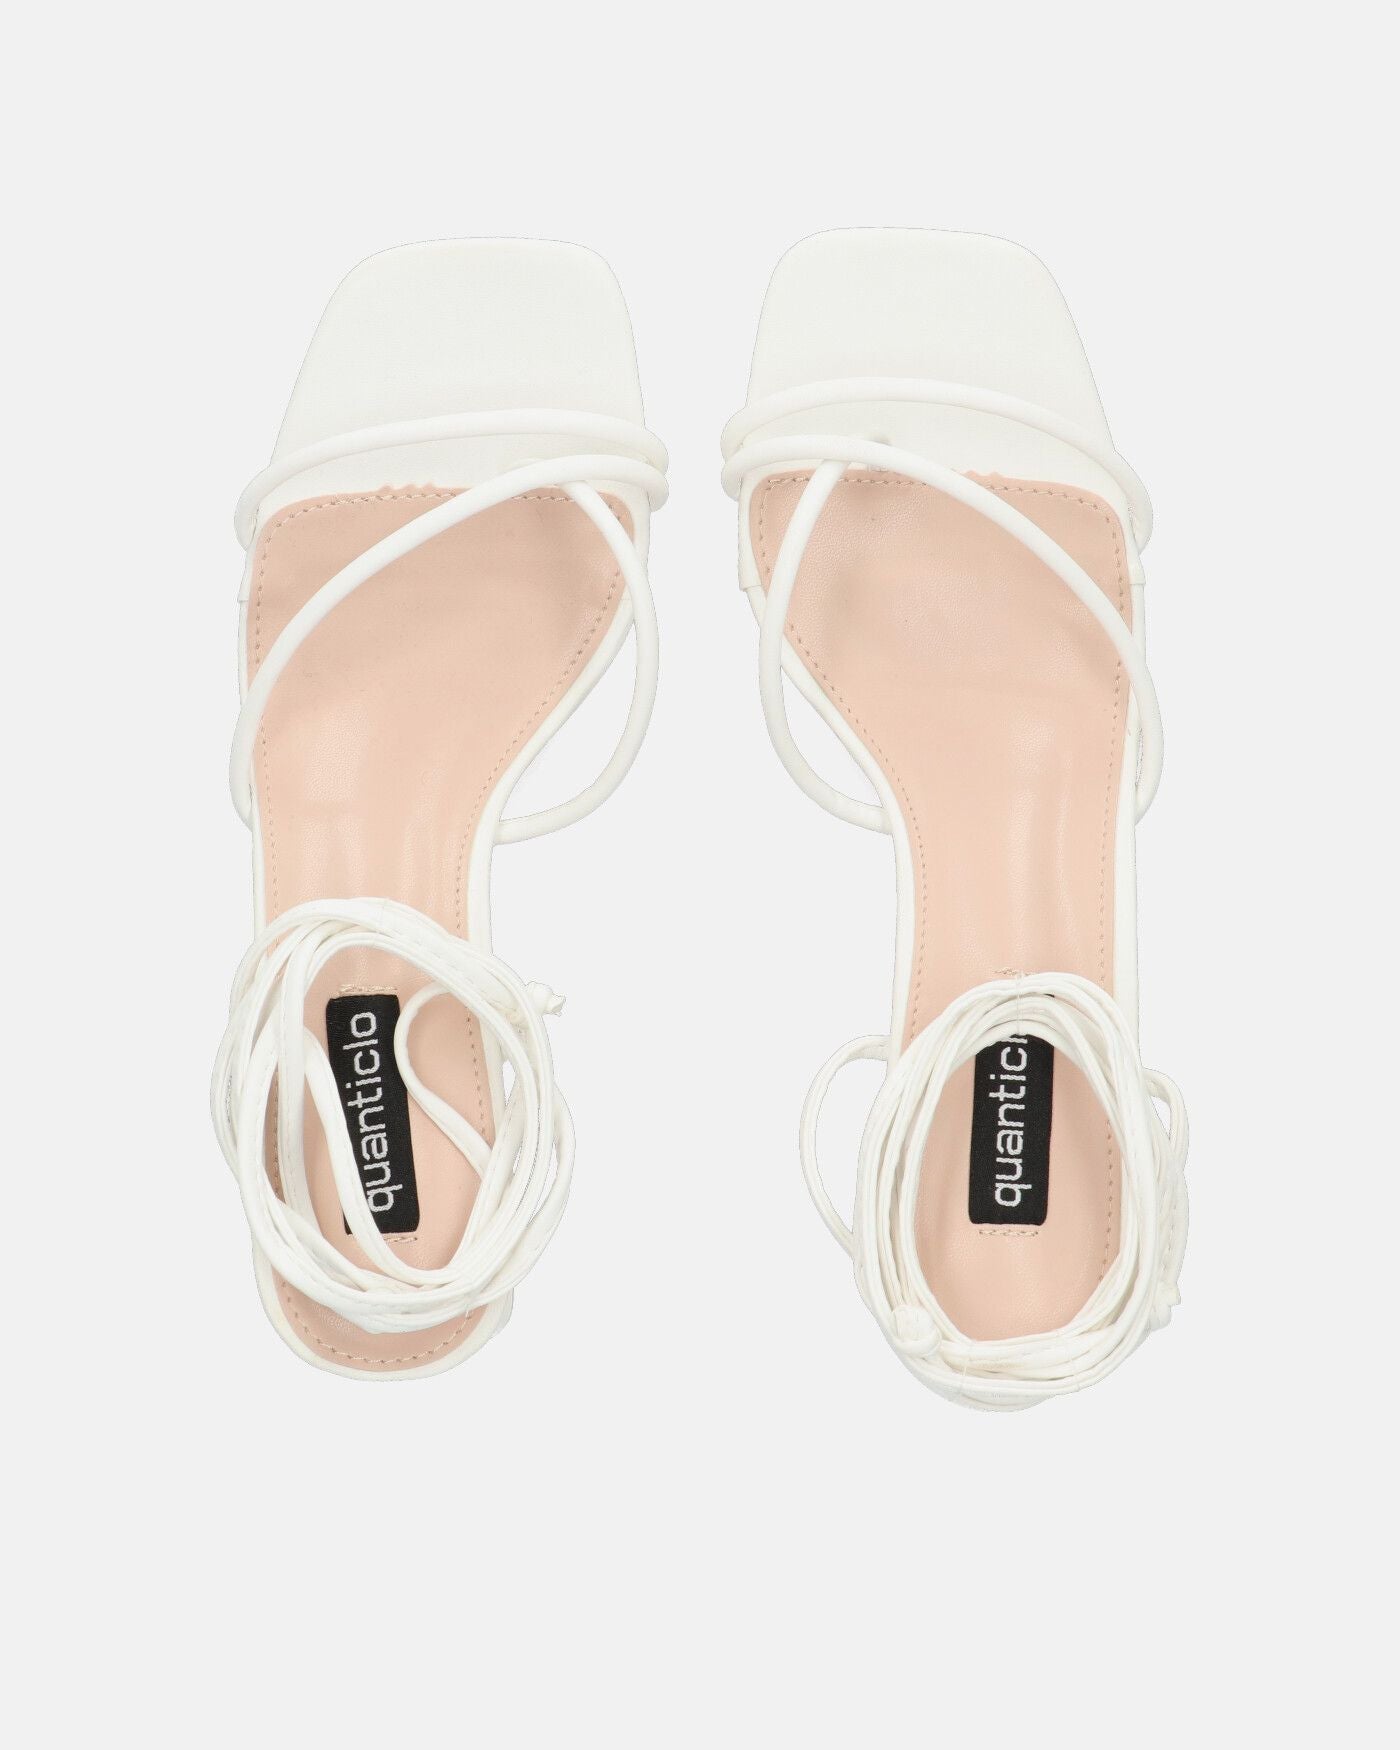 HOARA - heeled sandals in white PU